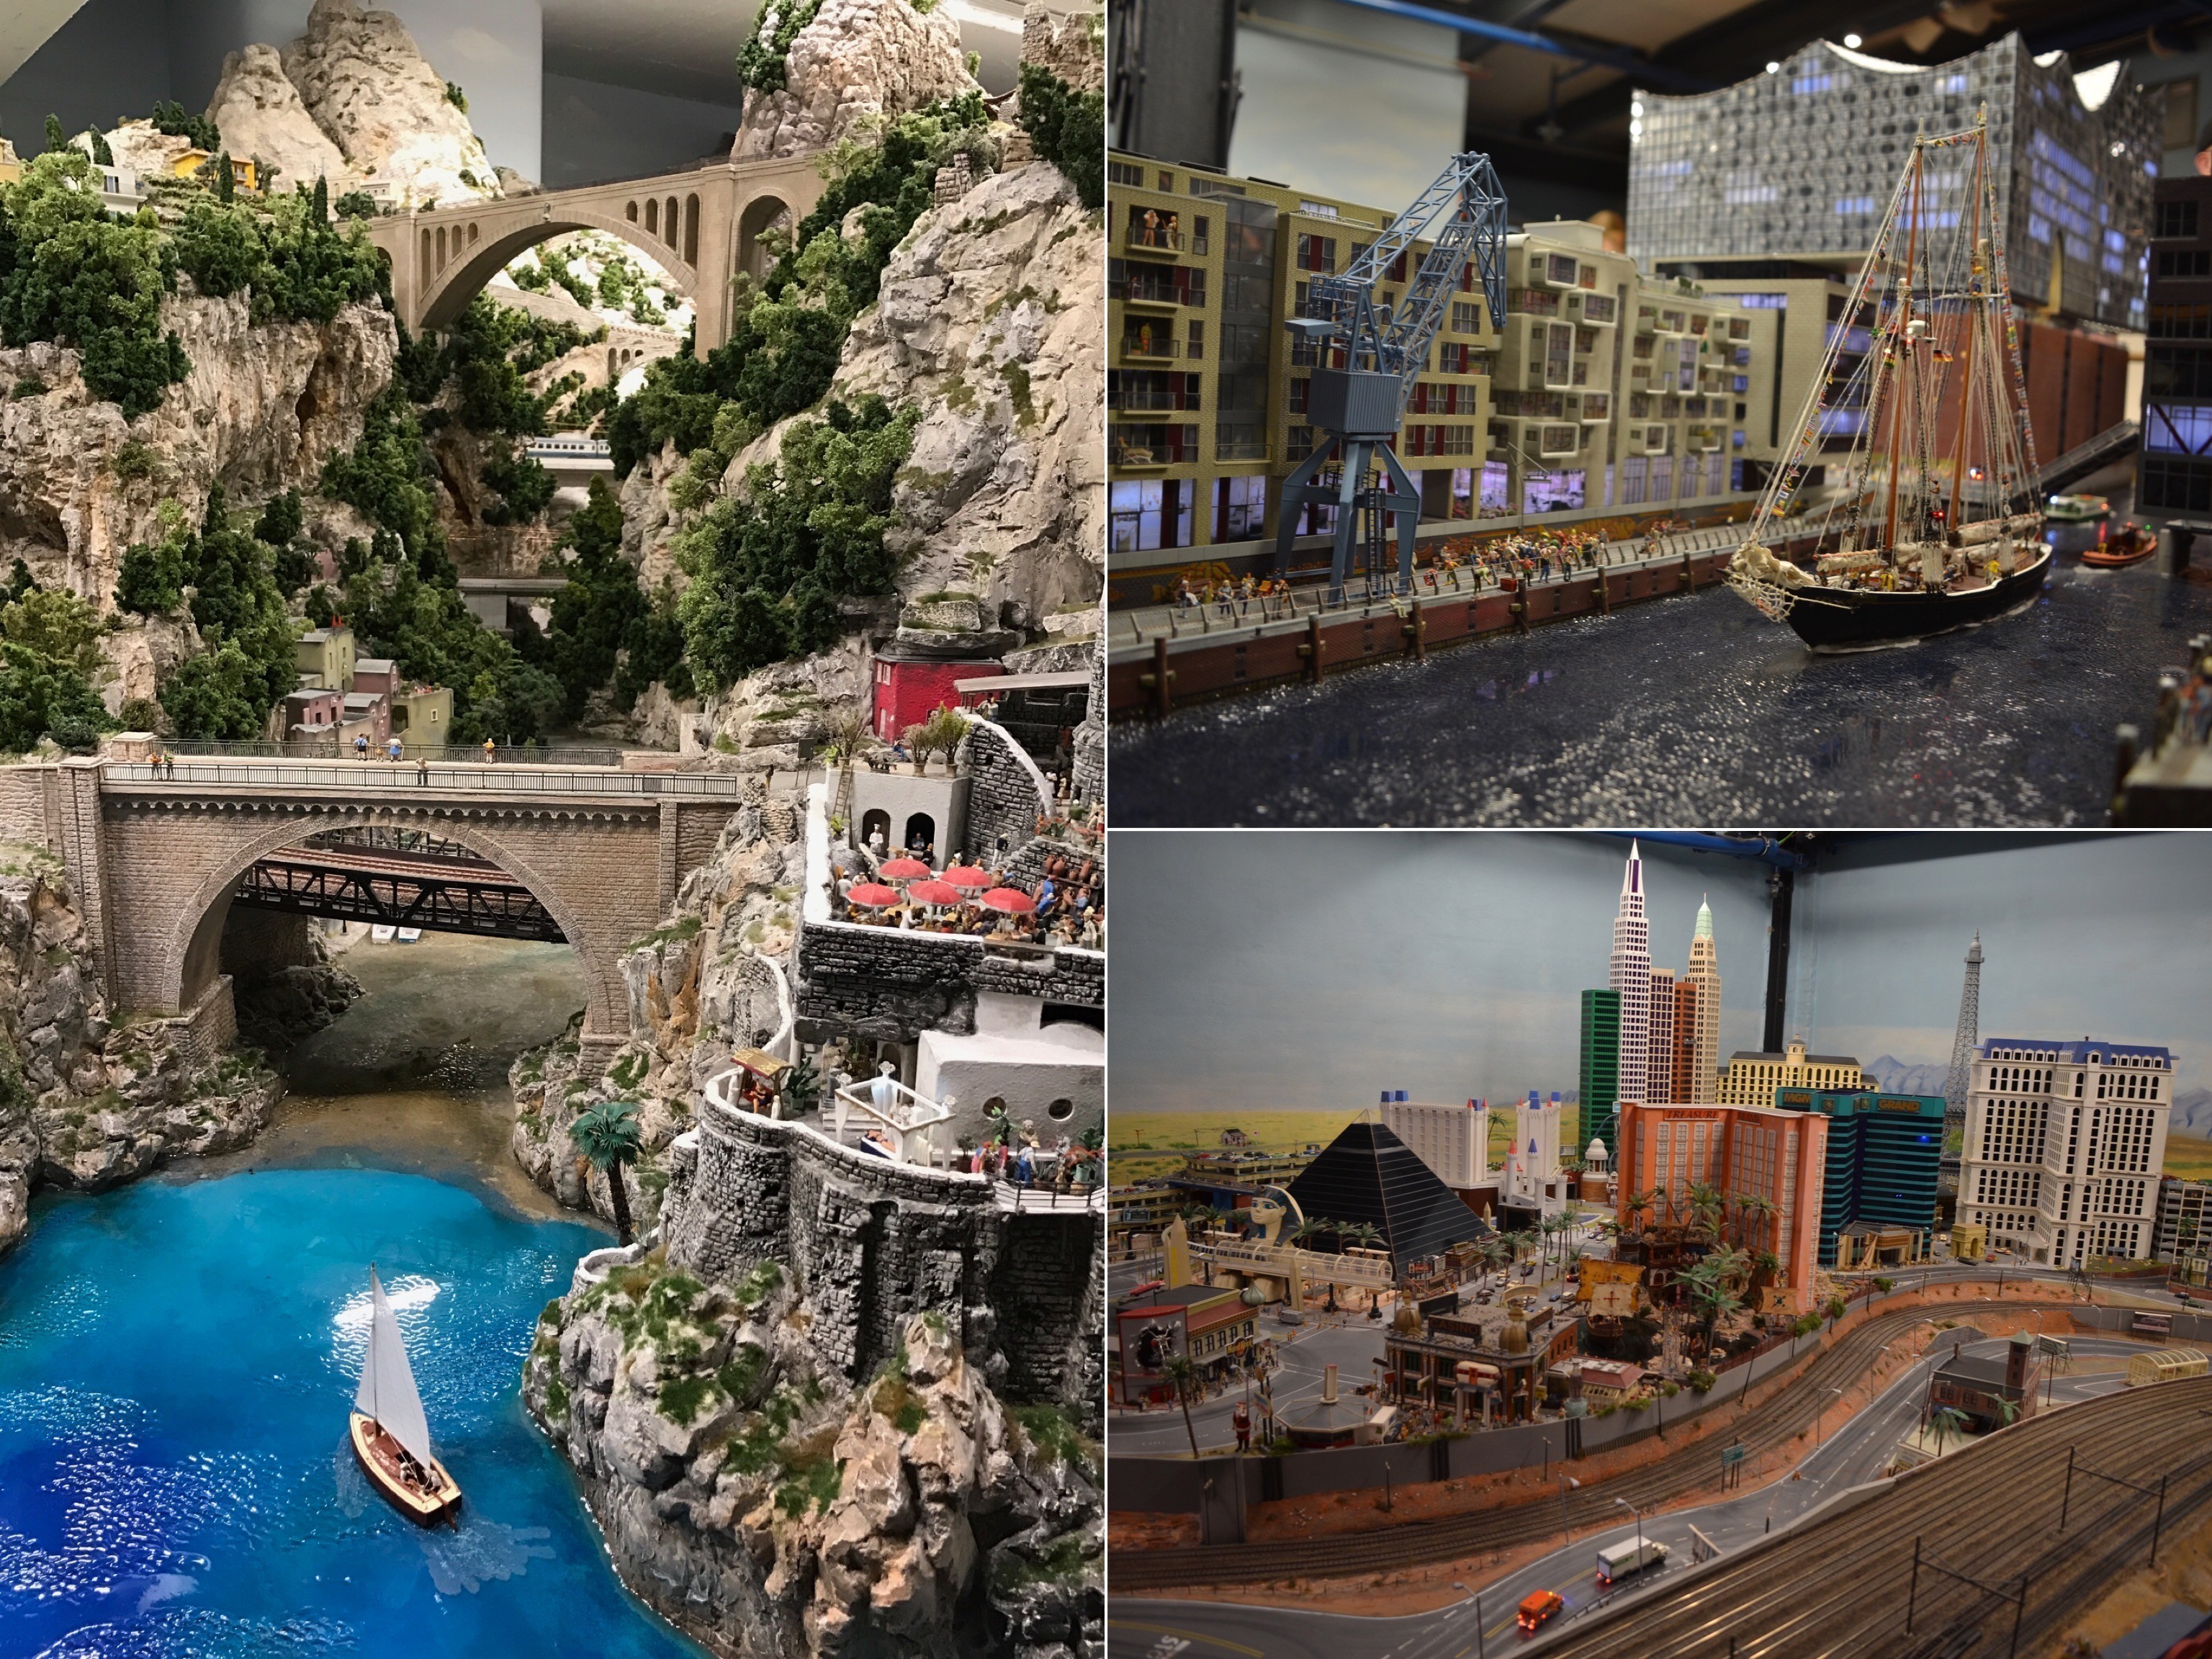 Im Miniatur Wunderland befindet sich die größte Modelleisenbahn der Welt. Hier werden verschiedene Orte auf der Erde im Maßstab 1:87 dargestellt.